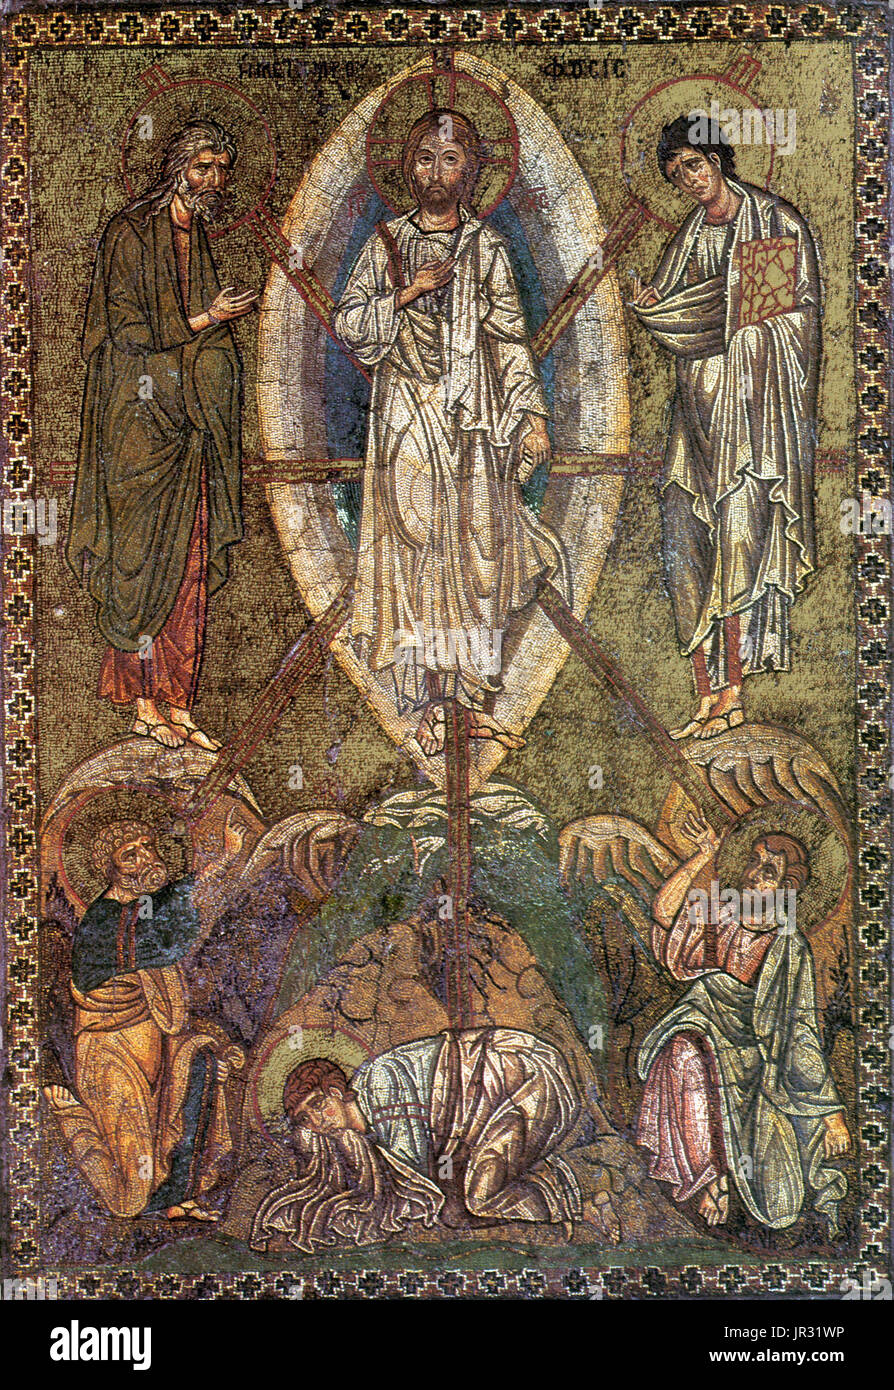 Byzantinischen Schule tragbare Symbol mit der Verklärung Jesu. Die Verklärung Jesu wurde ein wichtiges Thema in der christlichen Kunst, vor allem in der Ostkirche einige von dessen markantesten Symbole zeigen der Szene. Mosaiken waren zentraler zur byzantinischen Kultur als dem von Westeuropa. Byzantinische Kirchenräume wurden in der Regel mit goldenen Mosaiken bedeckt. Mosaik-Kunst blühte im byzantinischen Reich vom 6. bis zum 15. Jahrhundert. Stockfoto